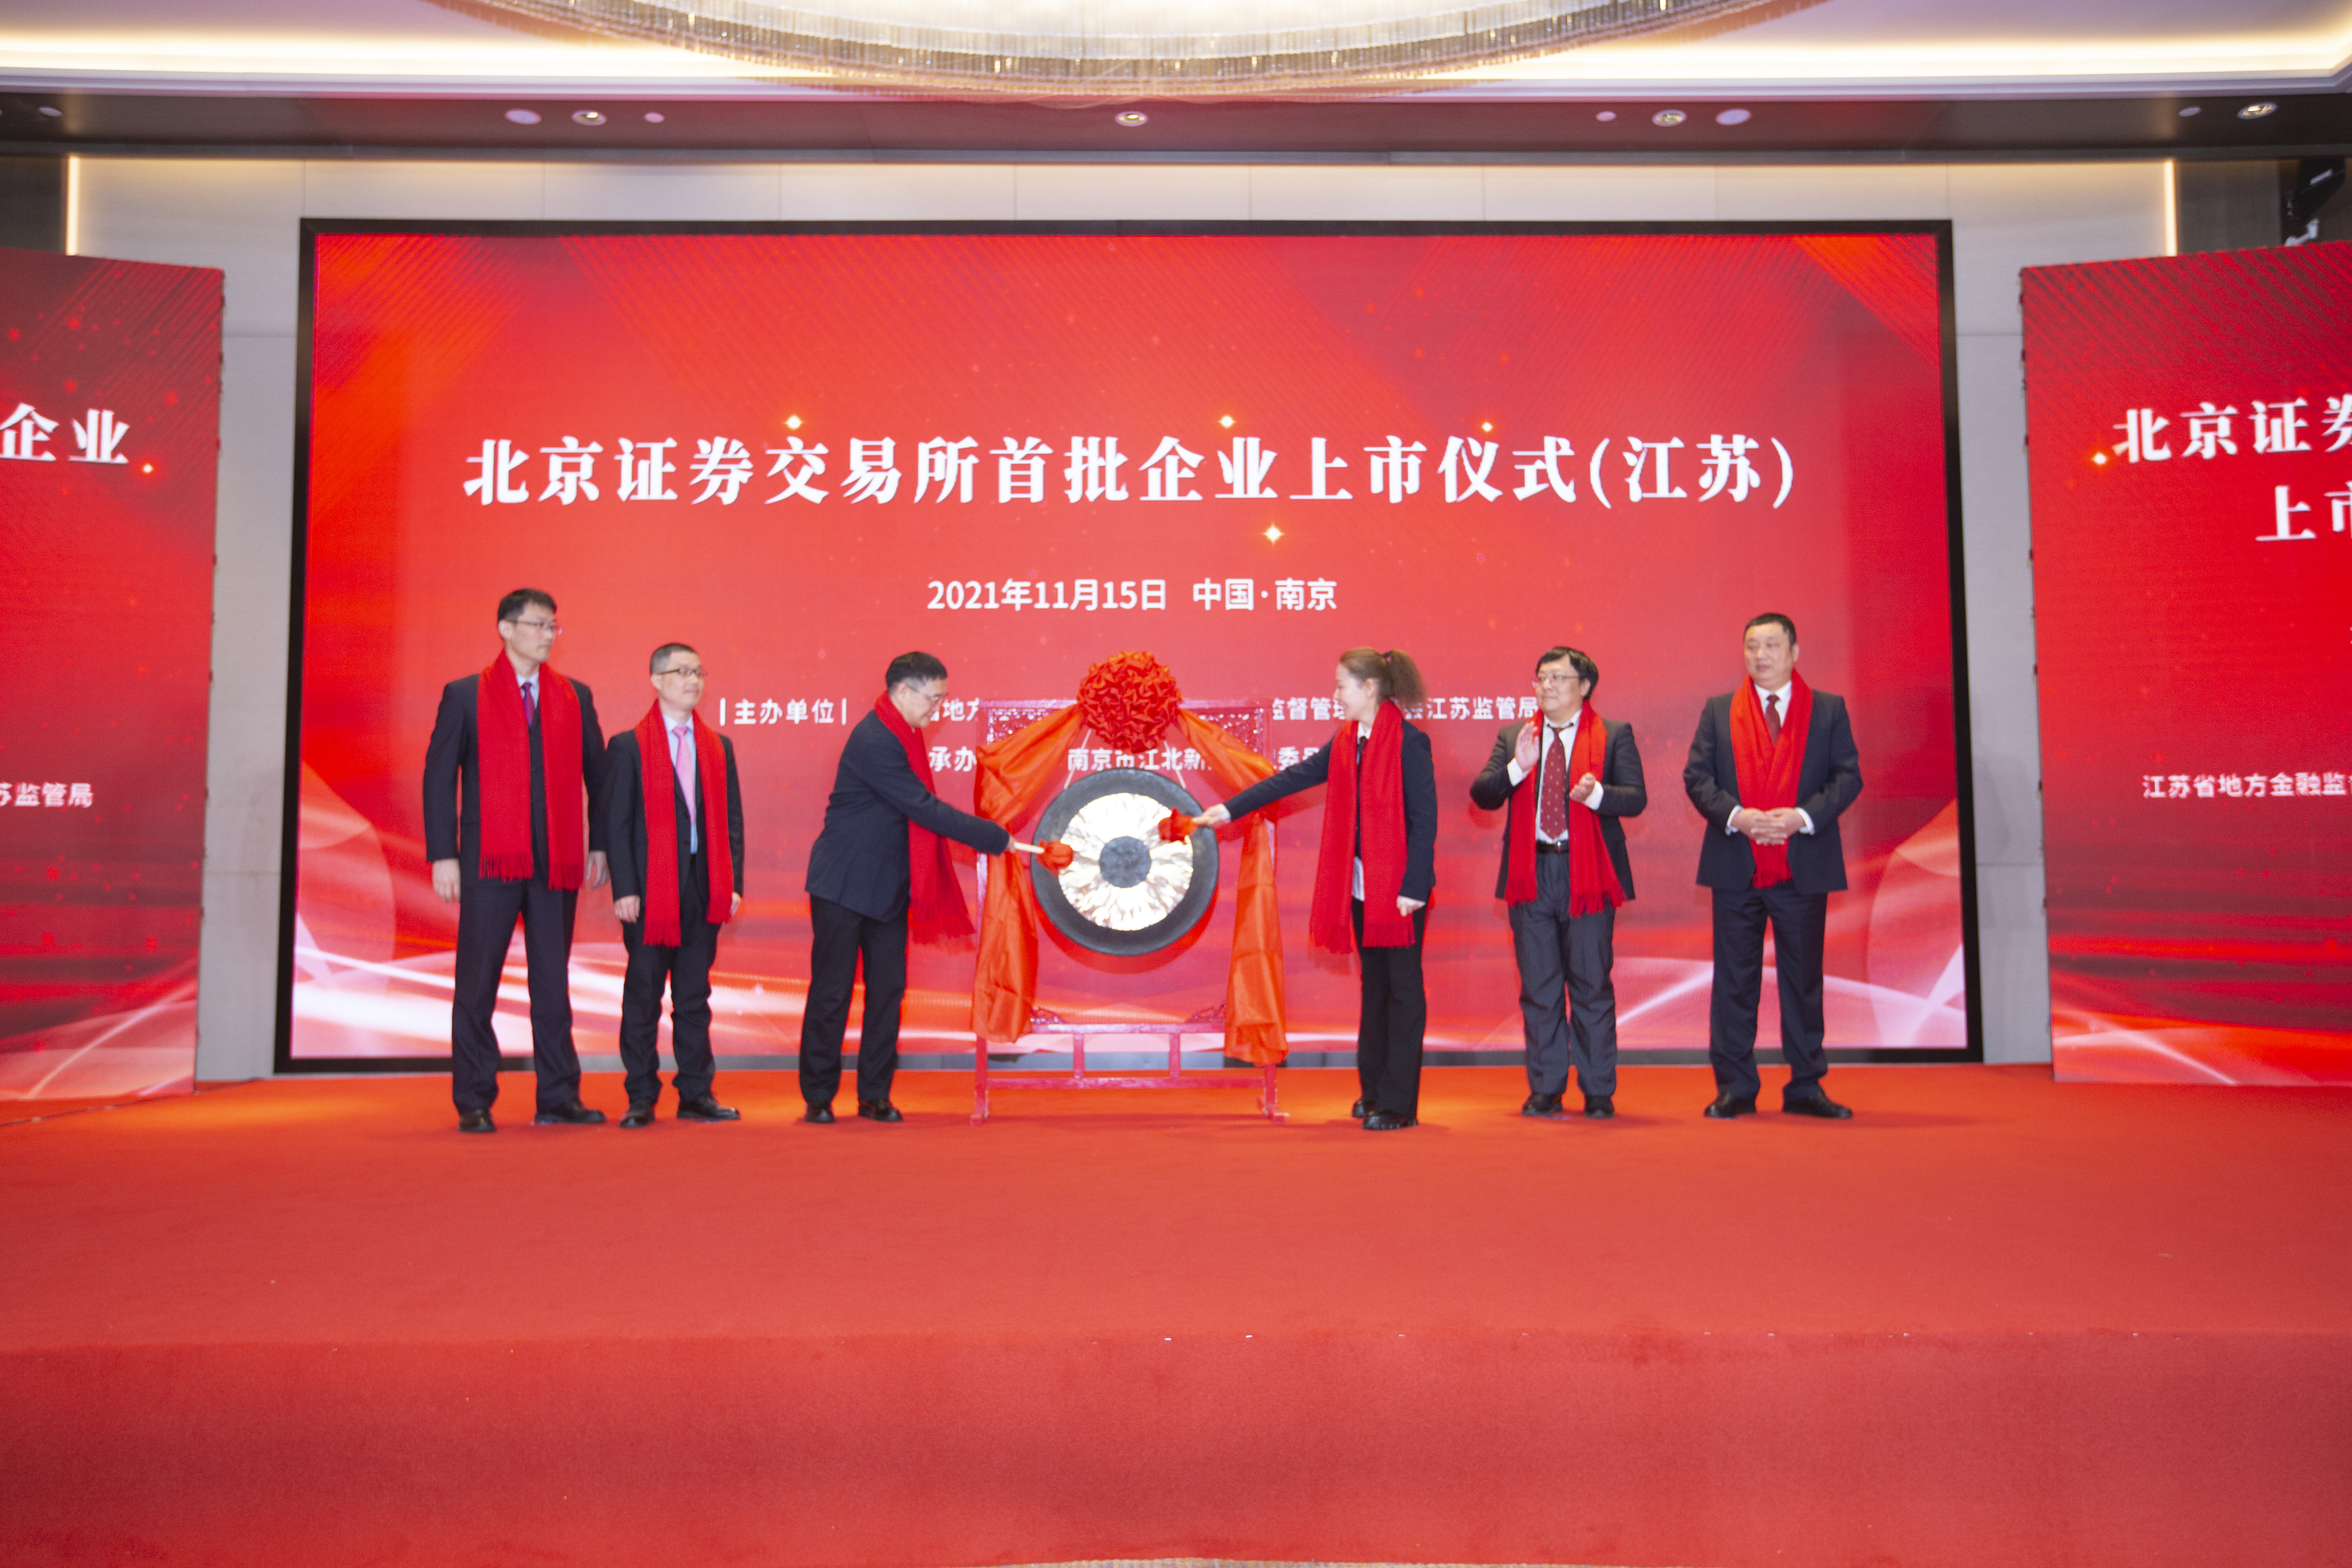 11月15日上午，北交所正式开市，首批企业上市仪式（江苏）在南京同步举行。云创大数据张真董事长、总裁刘鹏教授等受邀参加并鸣钟。